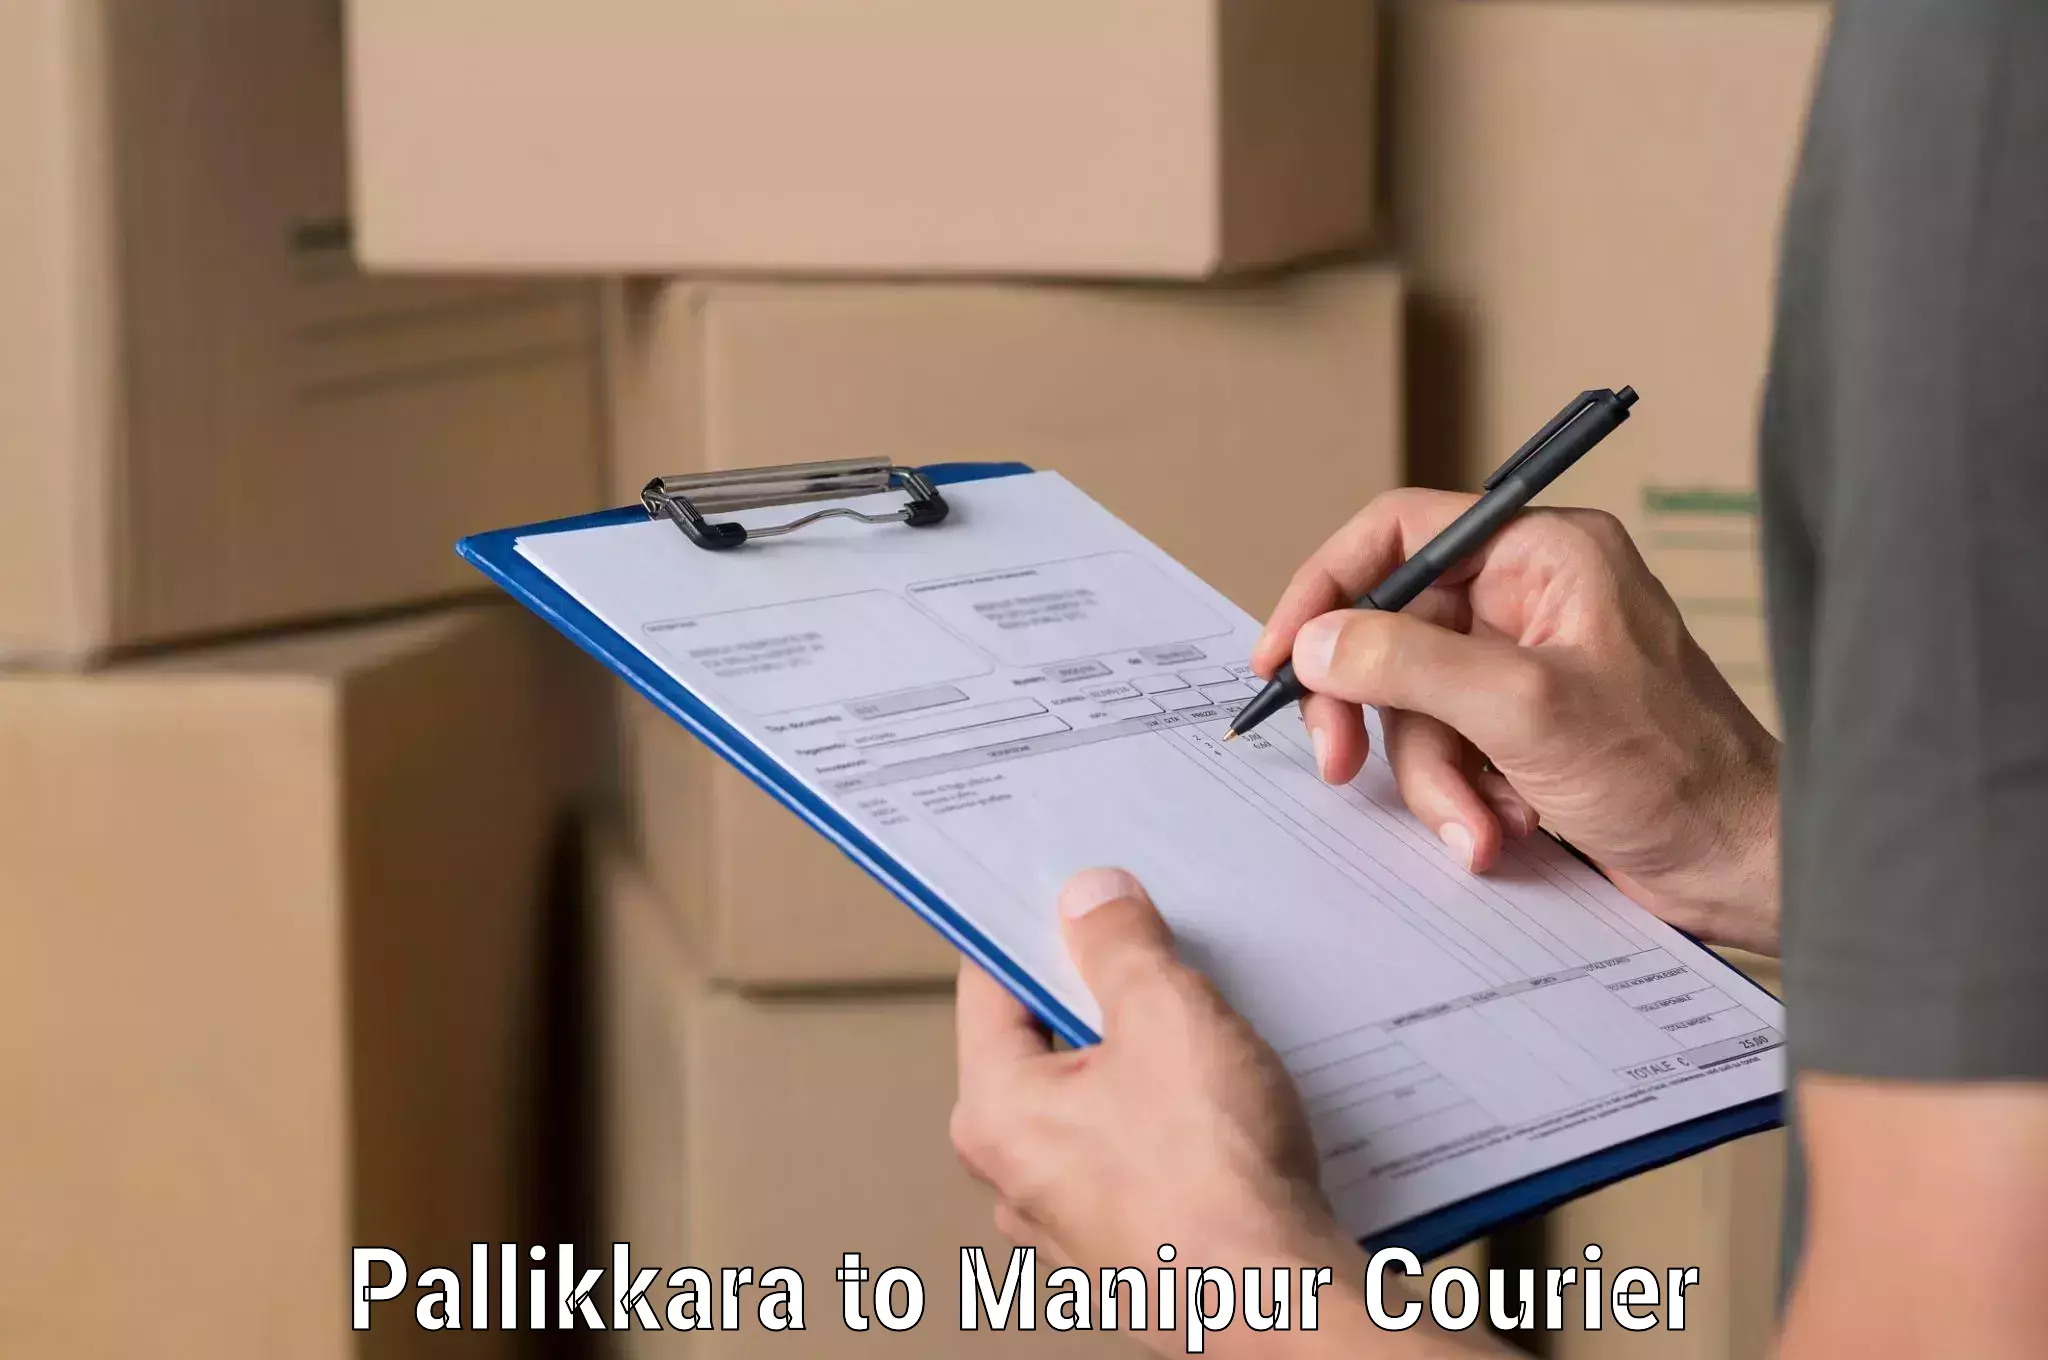 Reliable freight solutions Pallikkara to IIIT Senapati